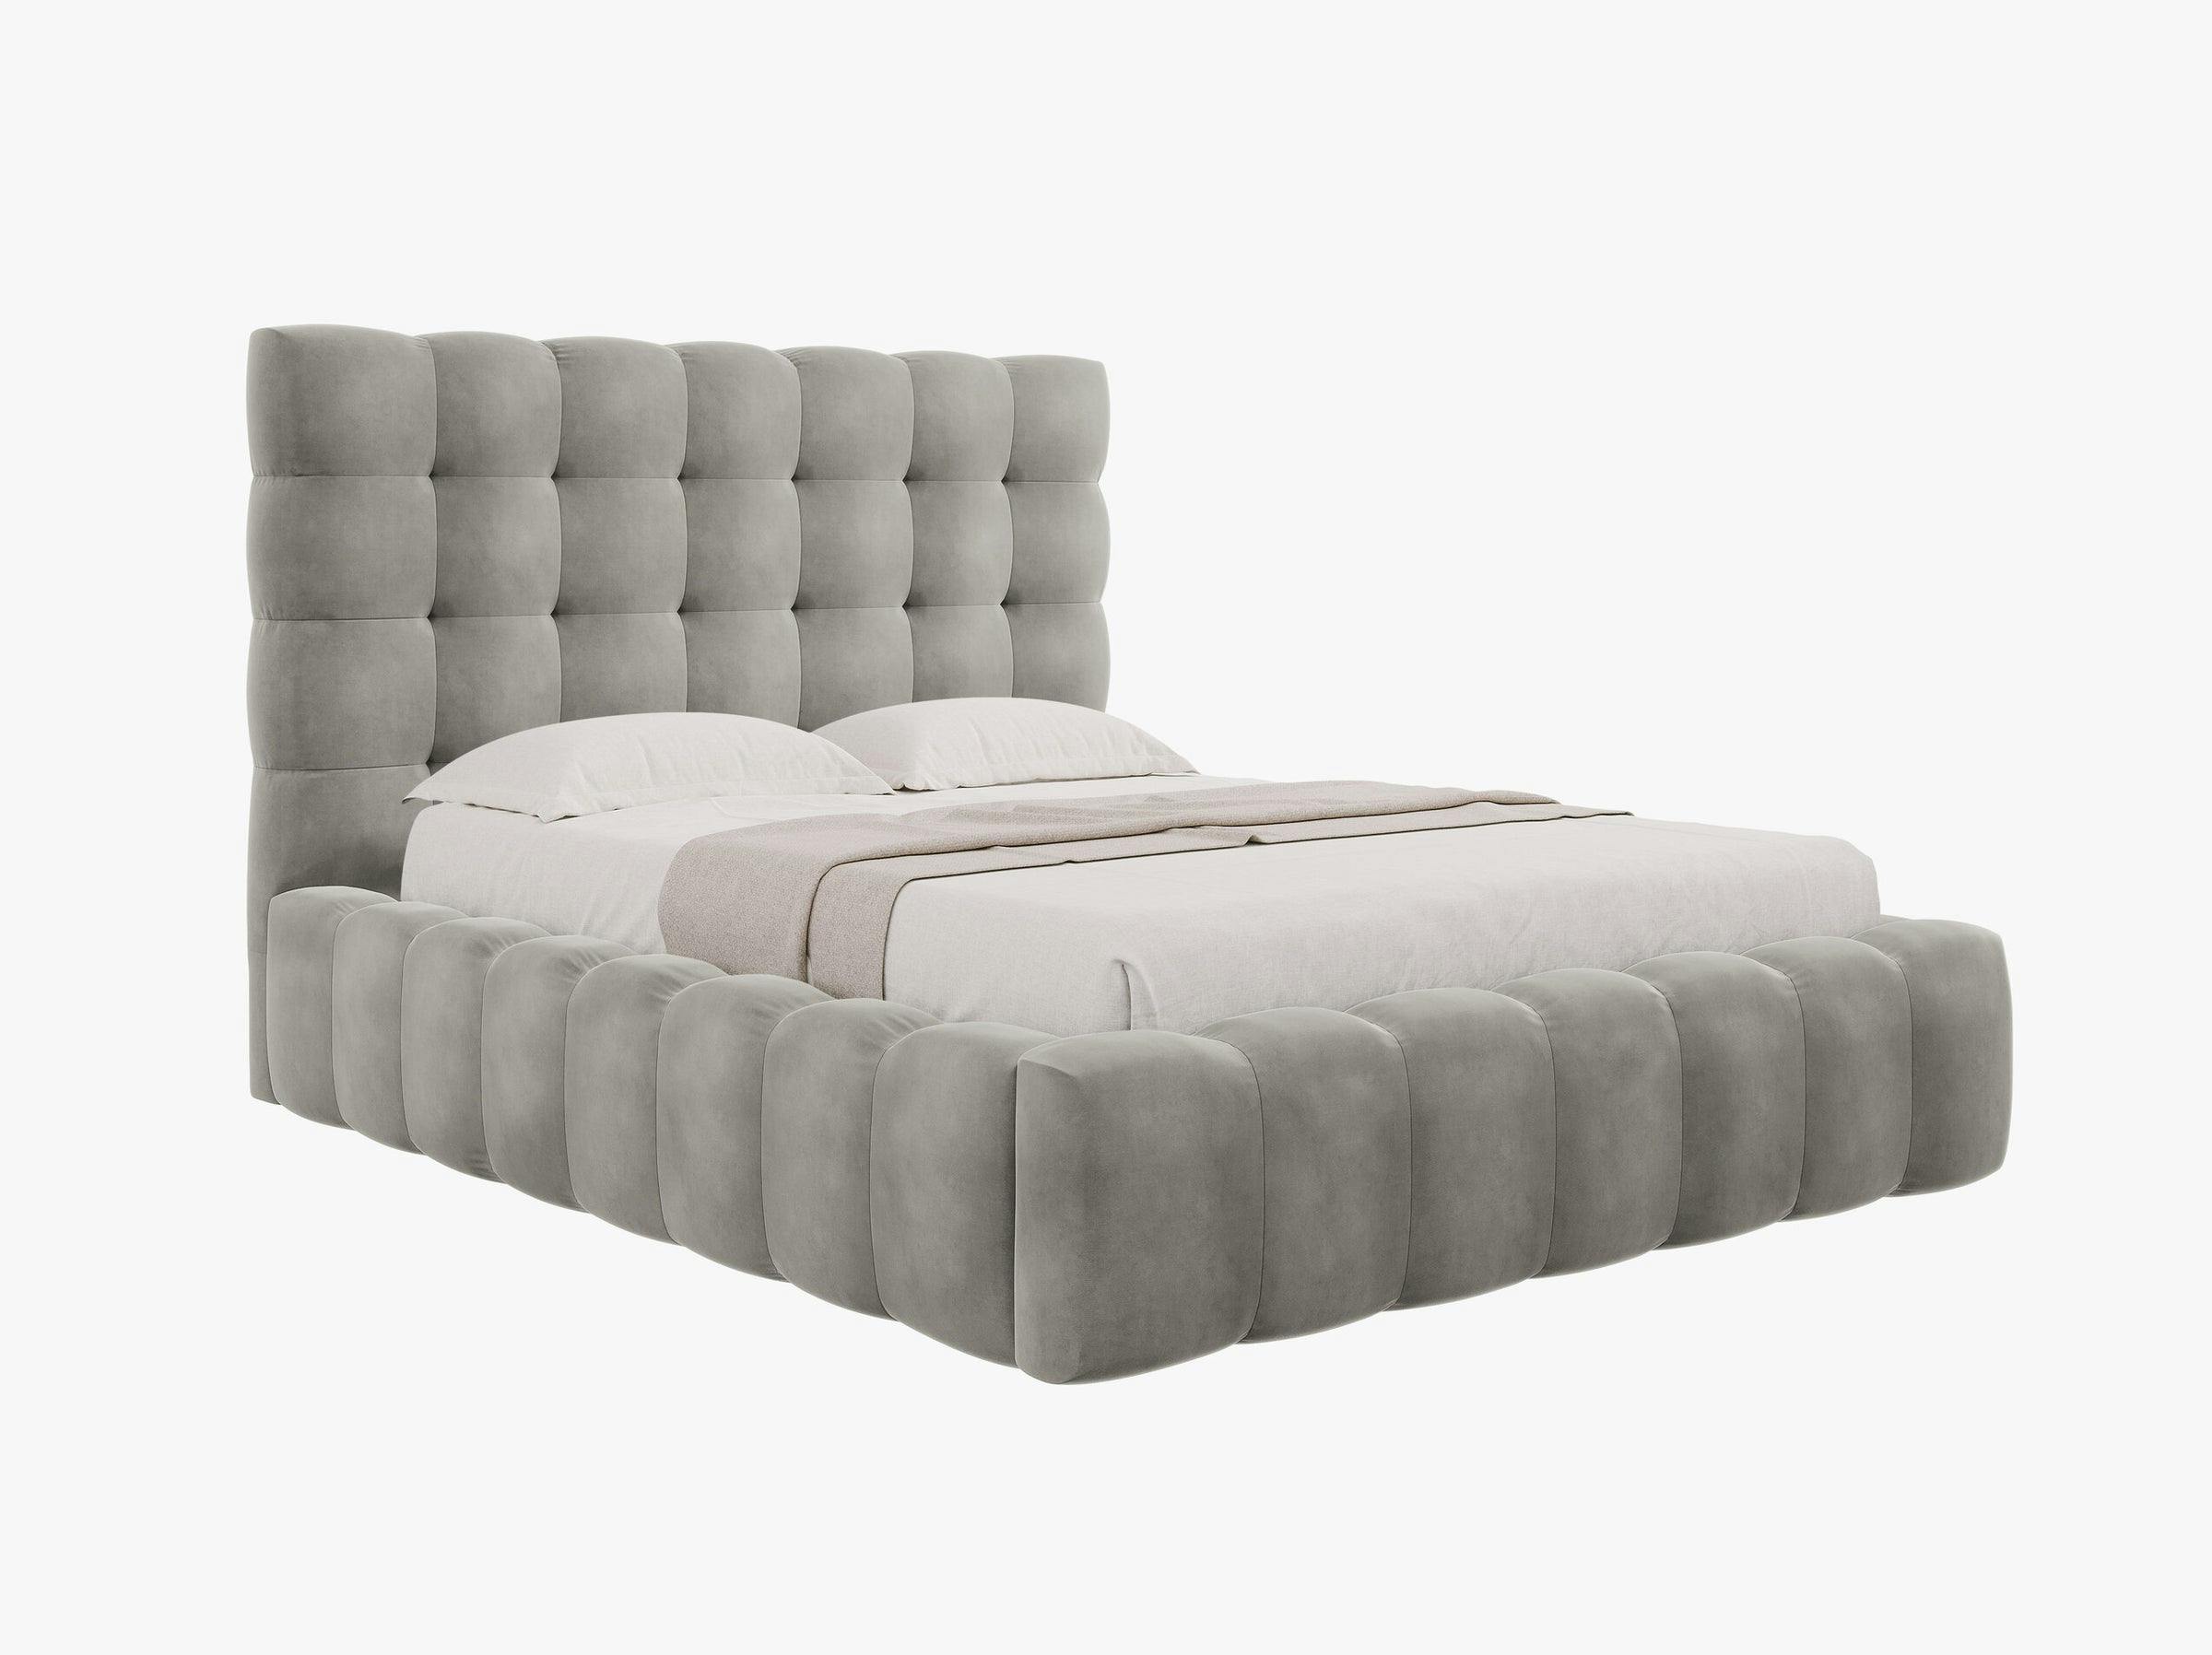 Mamaia beds & mattresses velvet light grey